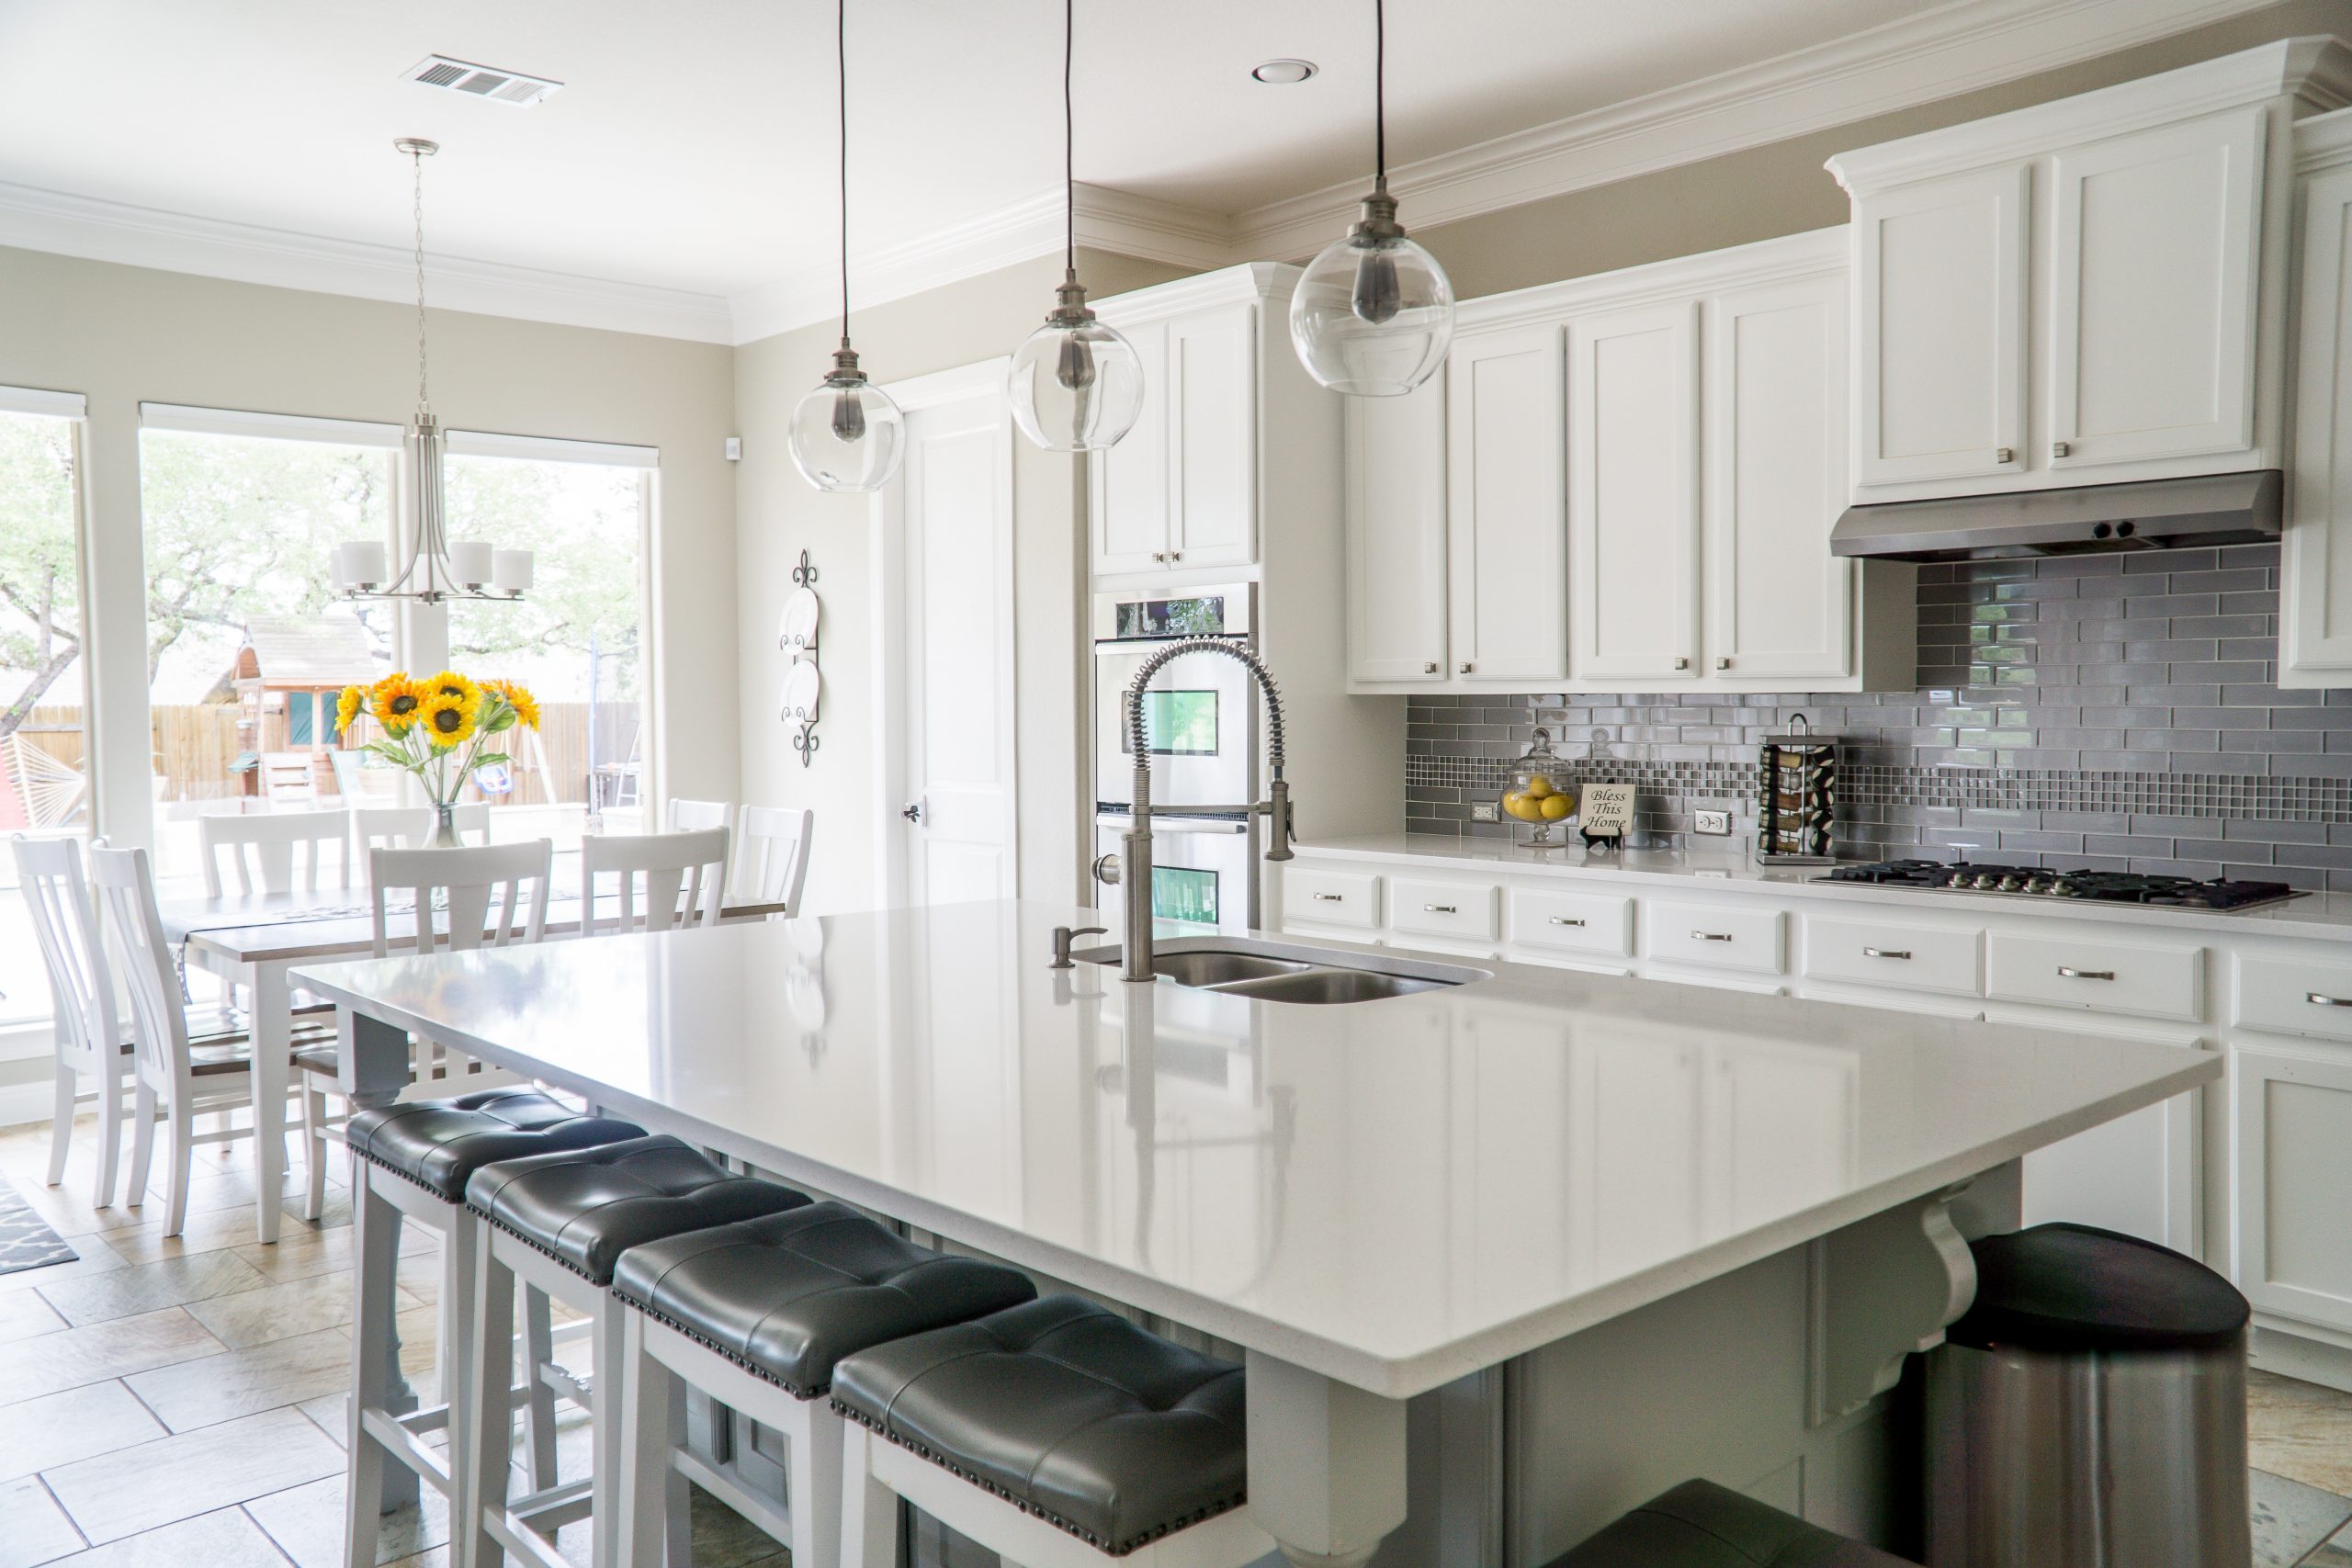 Zasady rozplanowania zabudowy kuchennej – ergonomia w kuchni